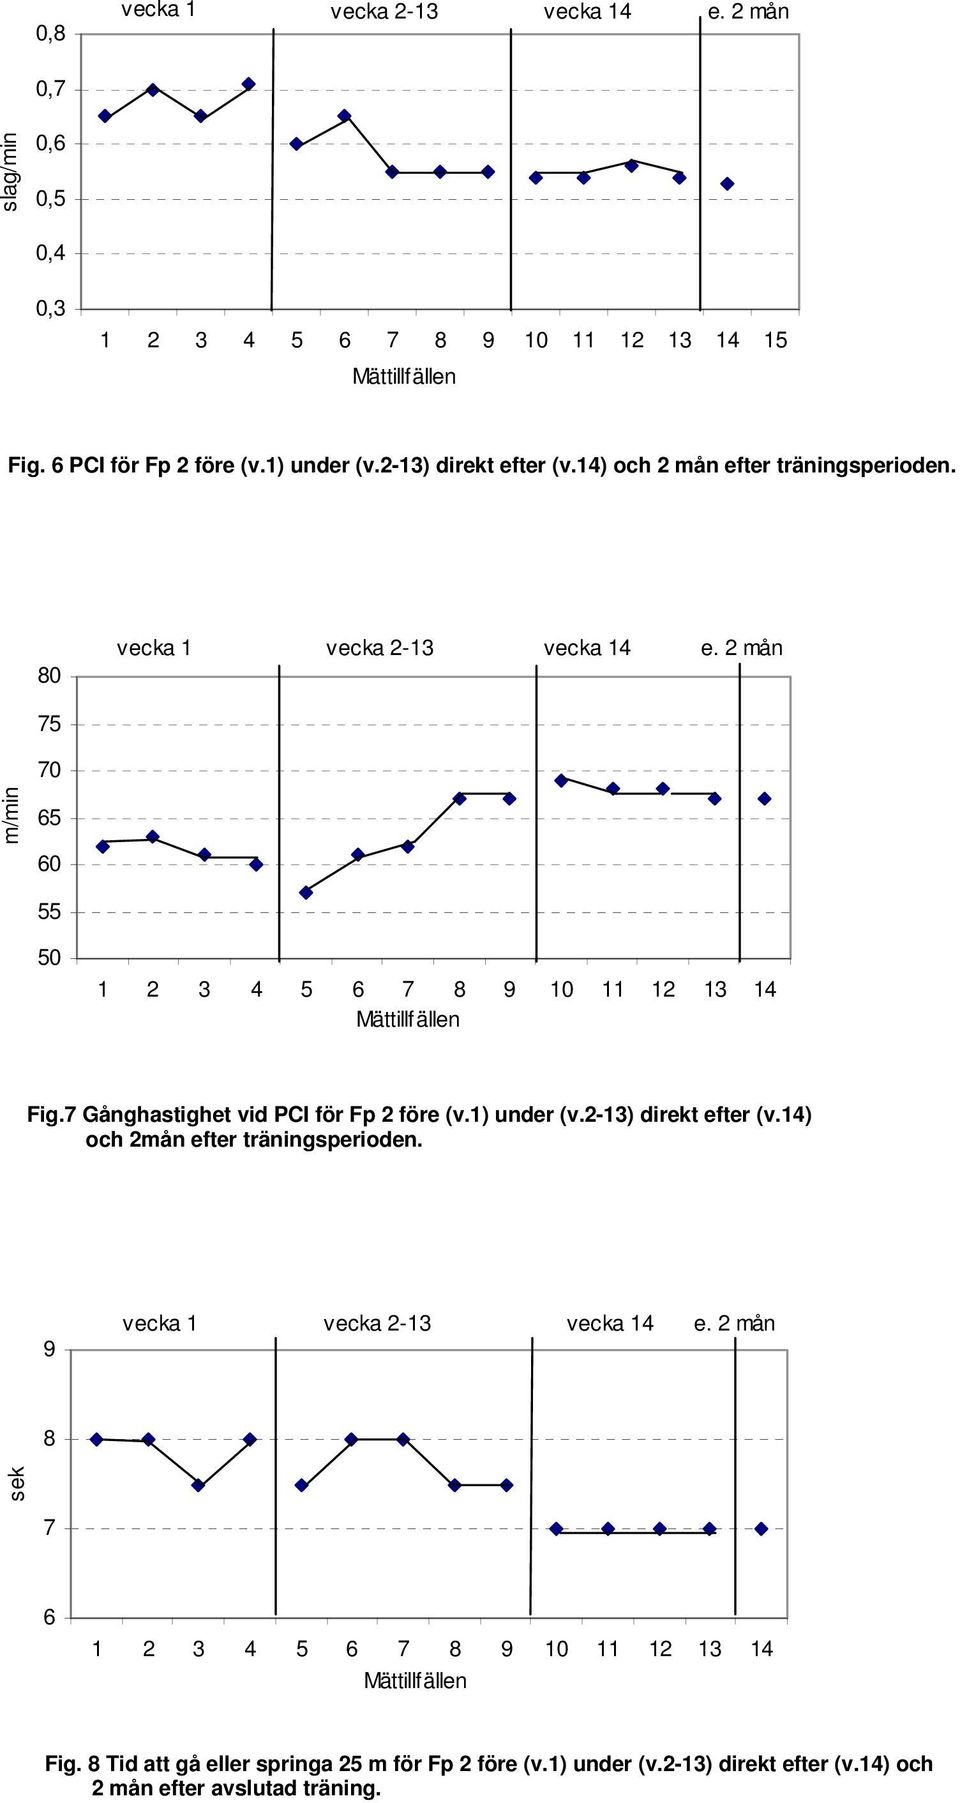 7 Gånghastighet vid PCI för Fp 2 före (v.1) under (v.2-13) direkt efter (v.14) och 2mån efter träningsperioden.